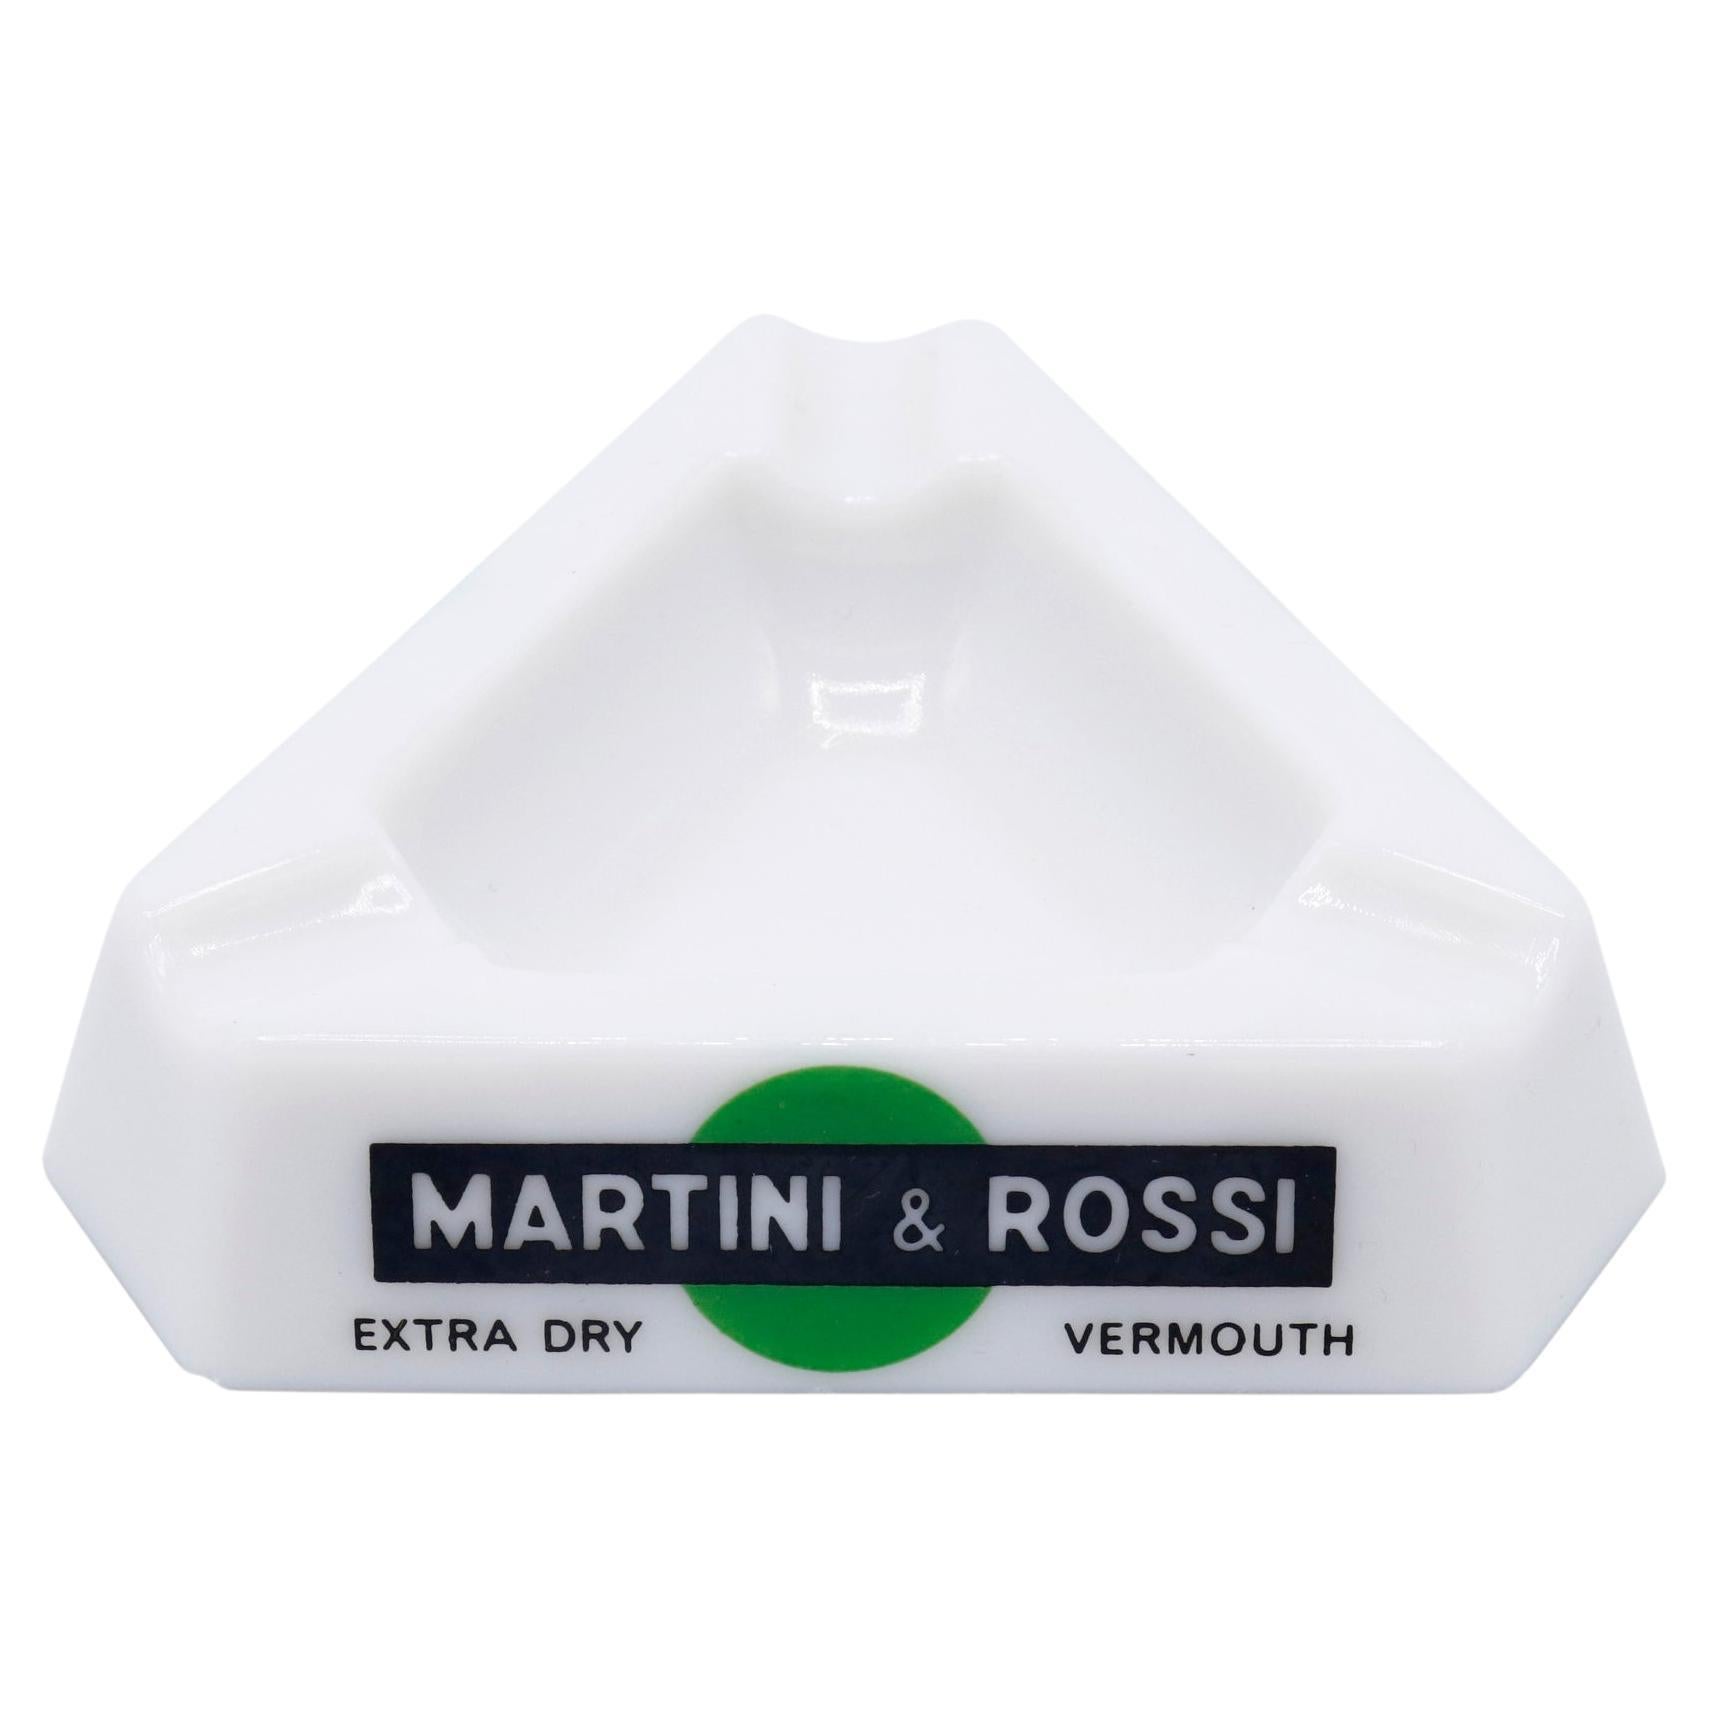 Martini & Rossi French Opalex Ashtray